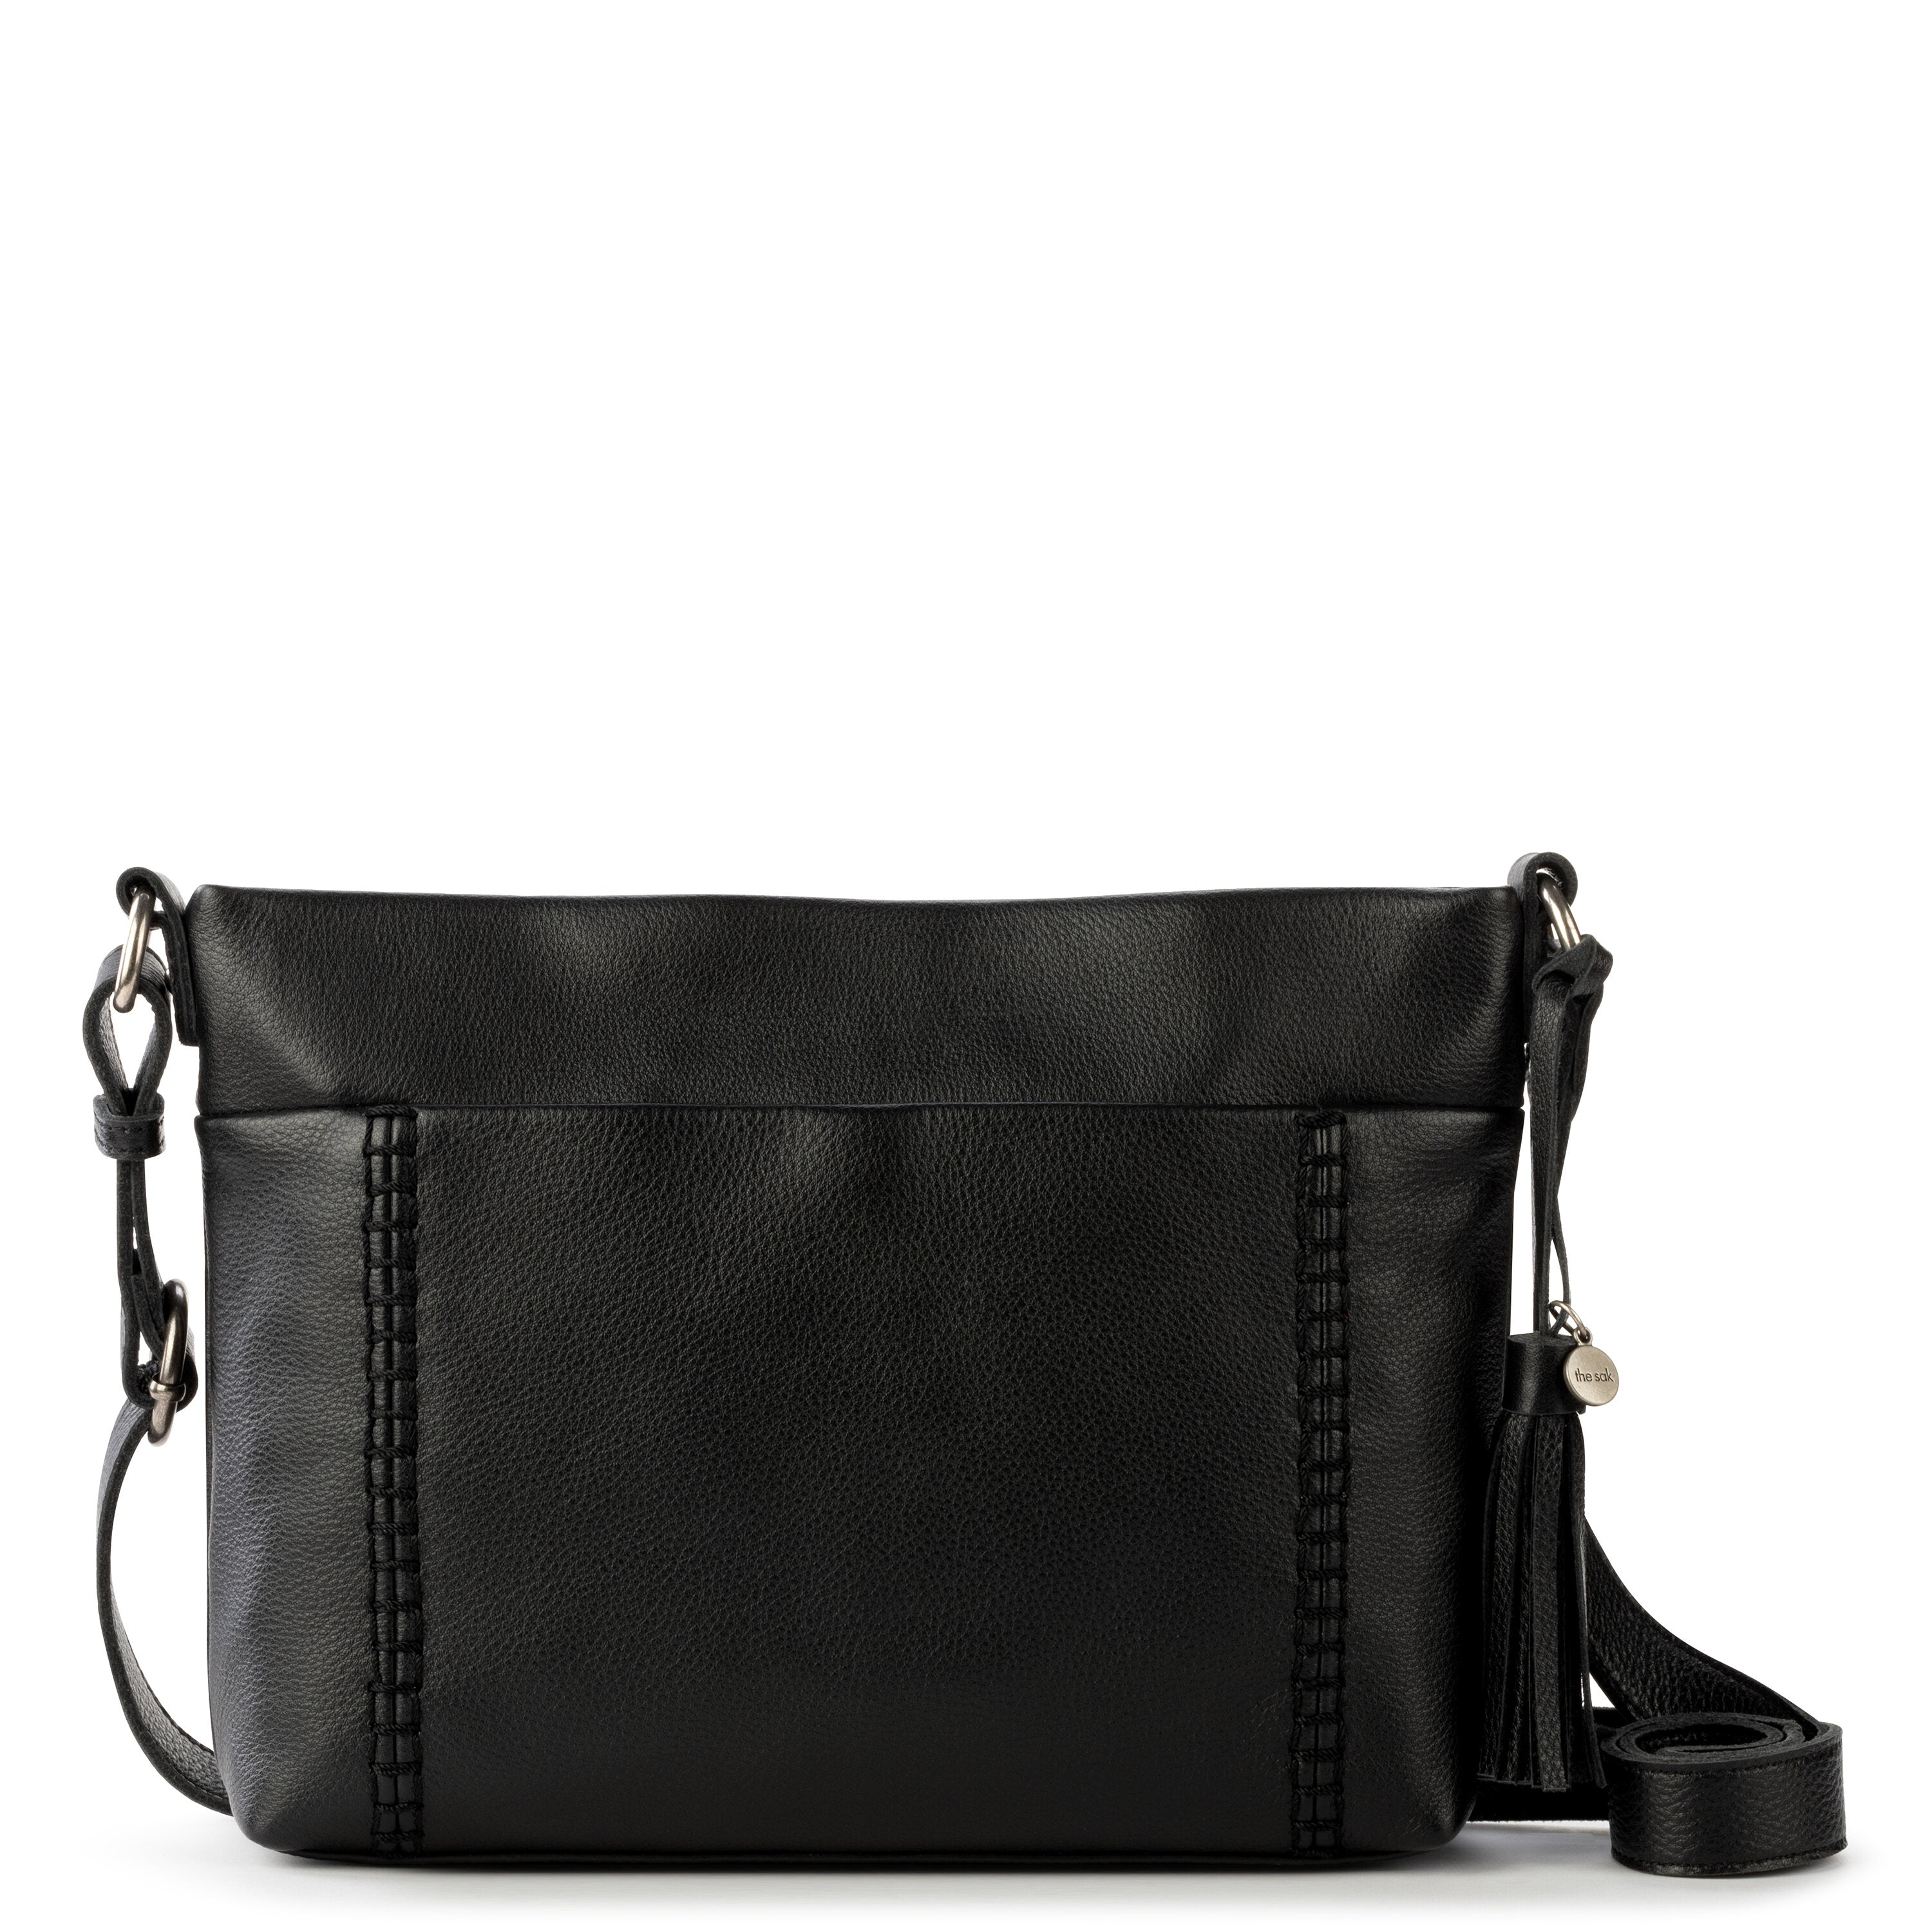 The Sak Large Genuine Pebble Leather Shoulder Bag in Black - Etsy